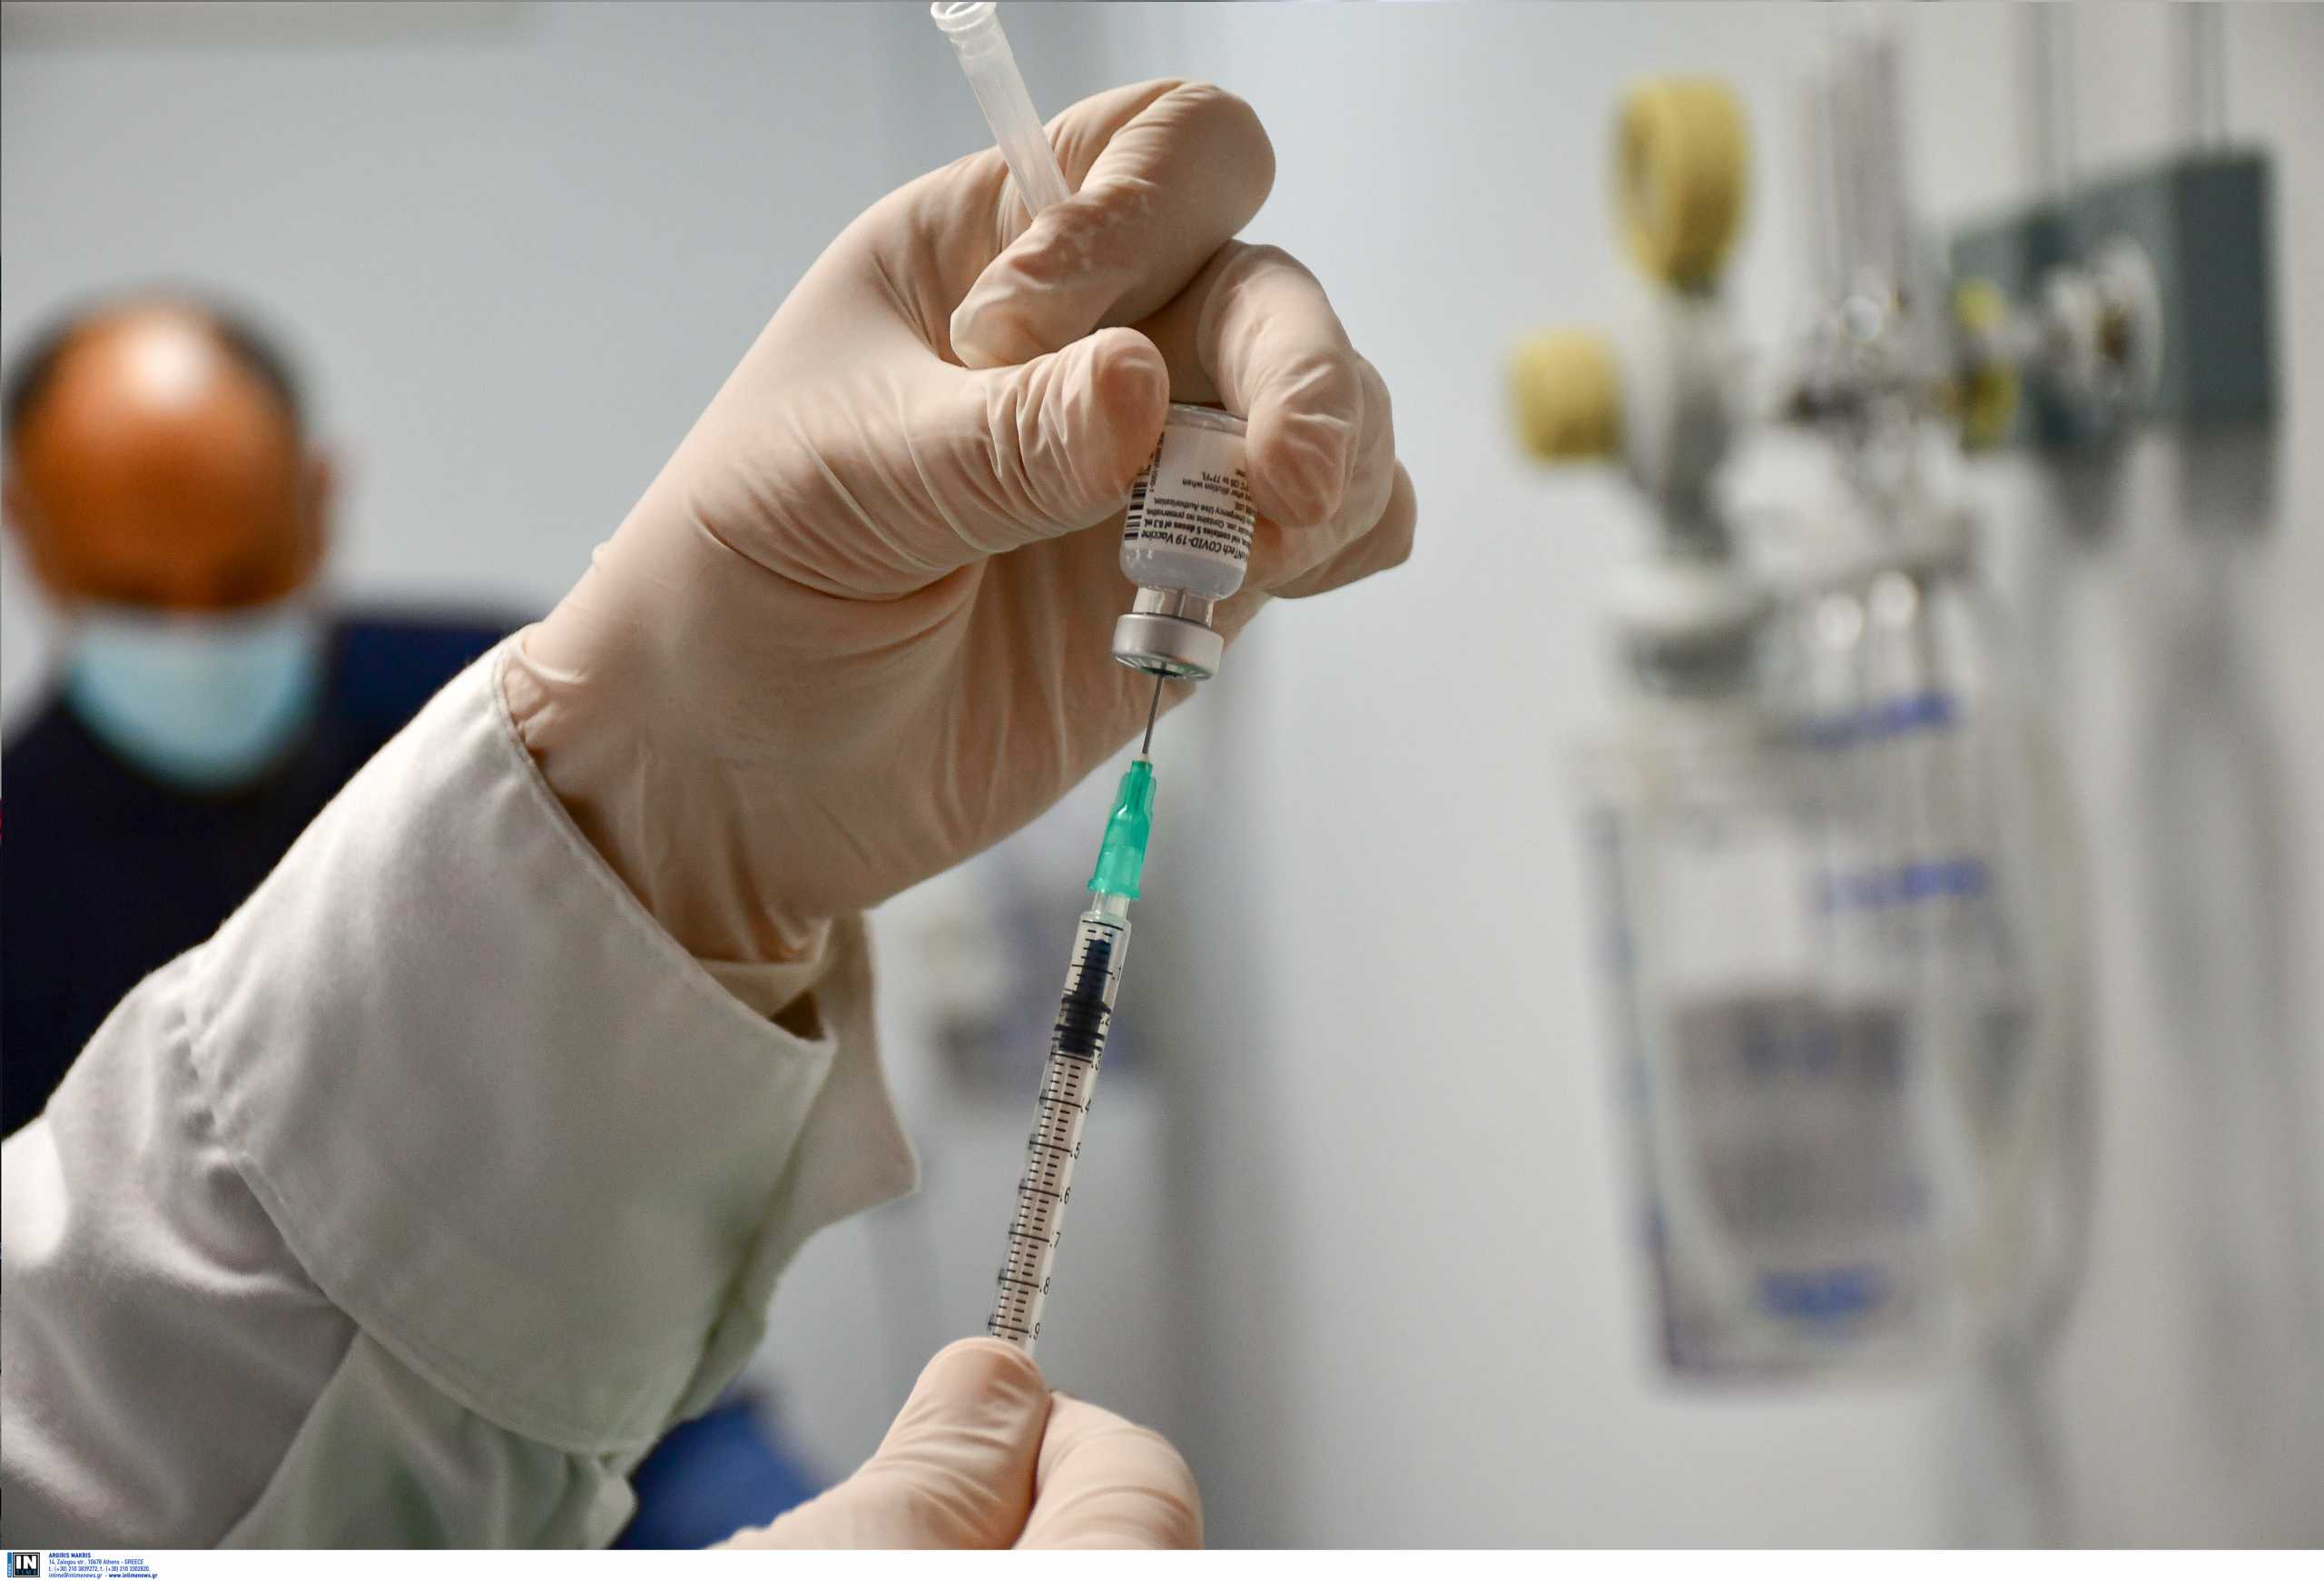 Δεκάδες ηλικιωμένοι πήγαν σε εμβολιαστικά κέντρα και έφυγαν άπραγοι γιατί… δεν υπήρχαν εμβόλια